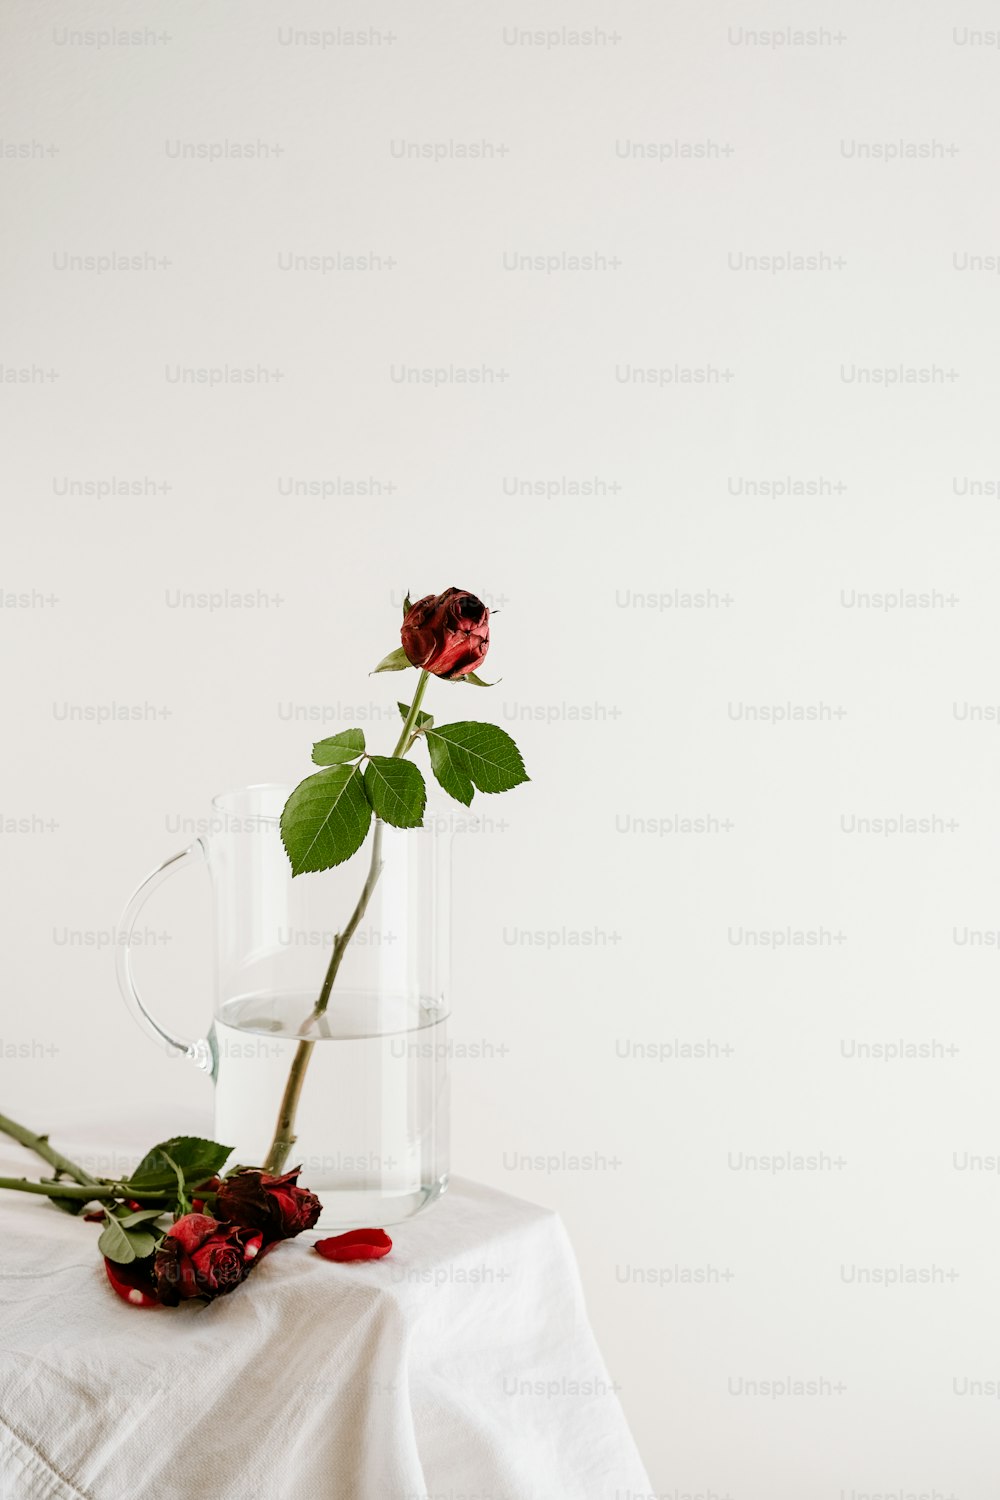 テーブルの上のガラスの花瓶に生けられた一輪のバラ